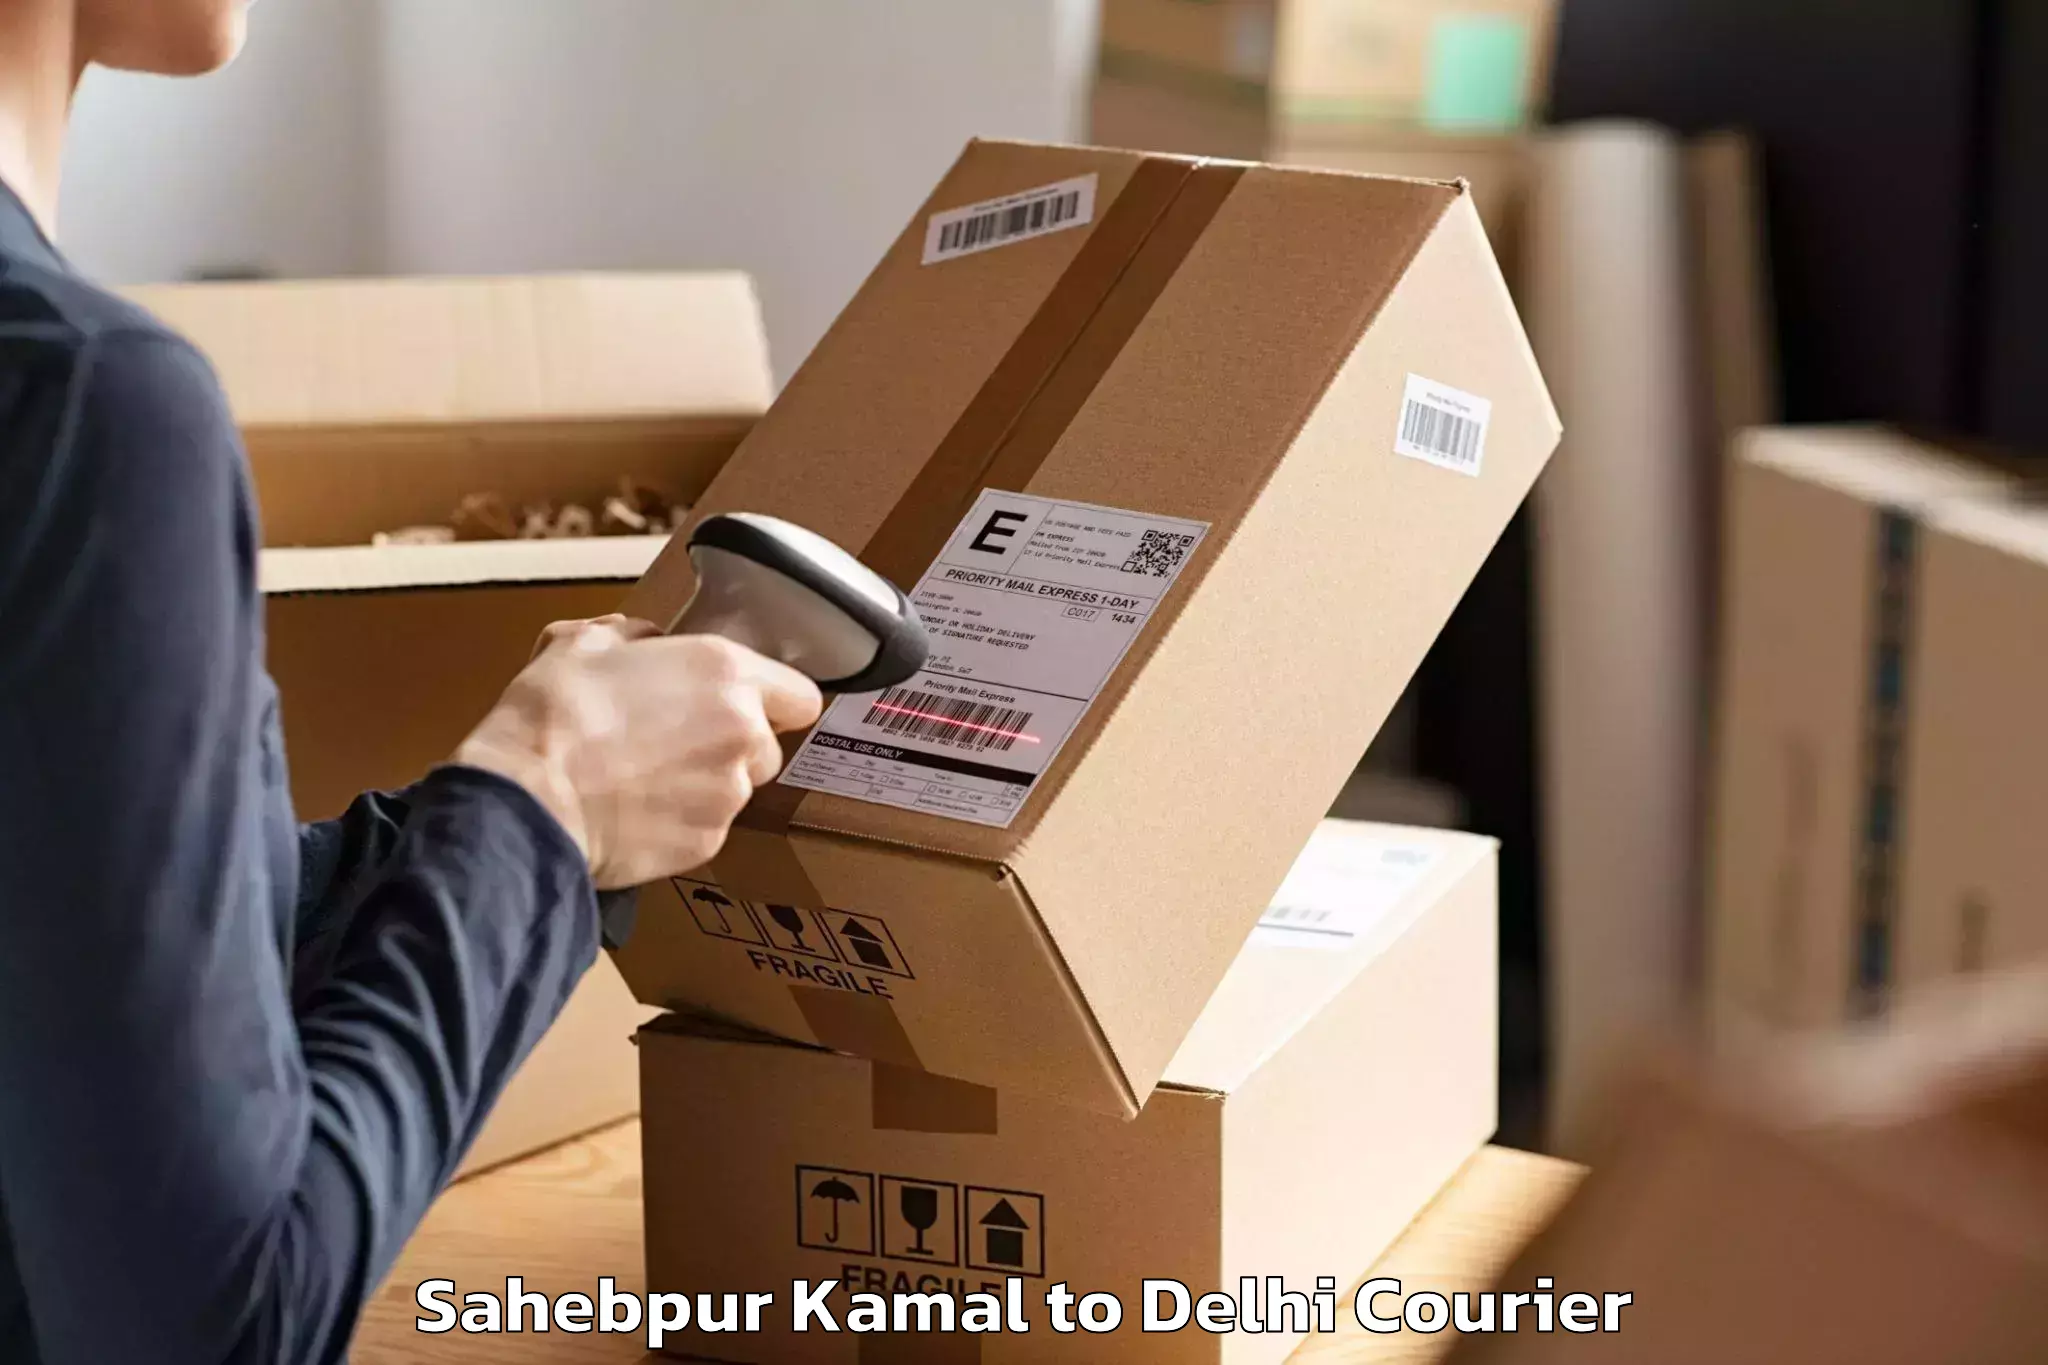 Furniture delivery service Sahebpur Kamal to Delhi